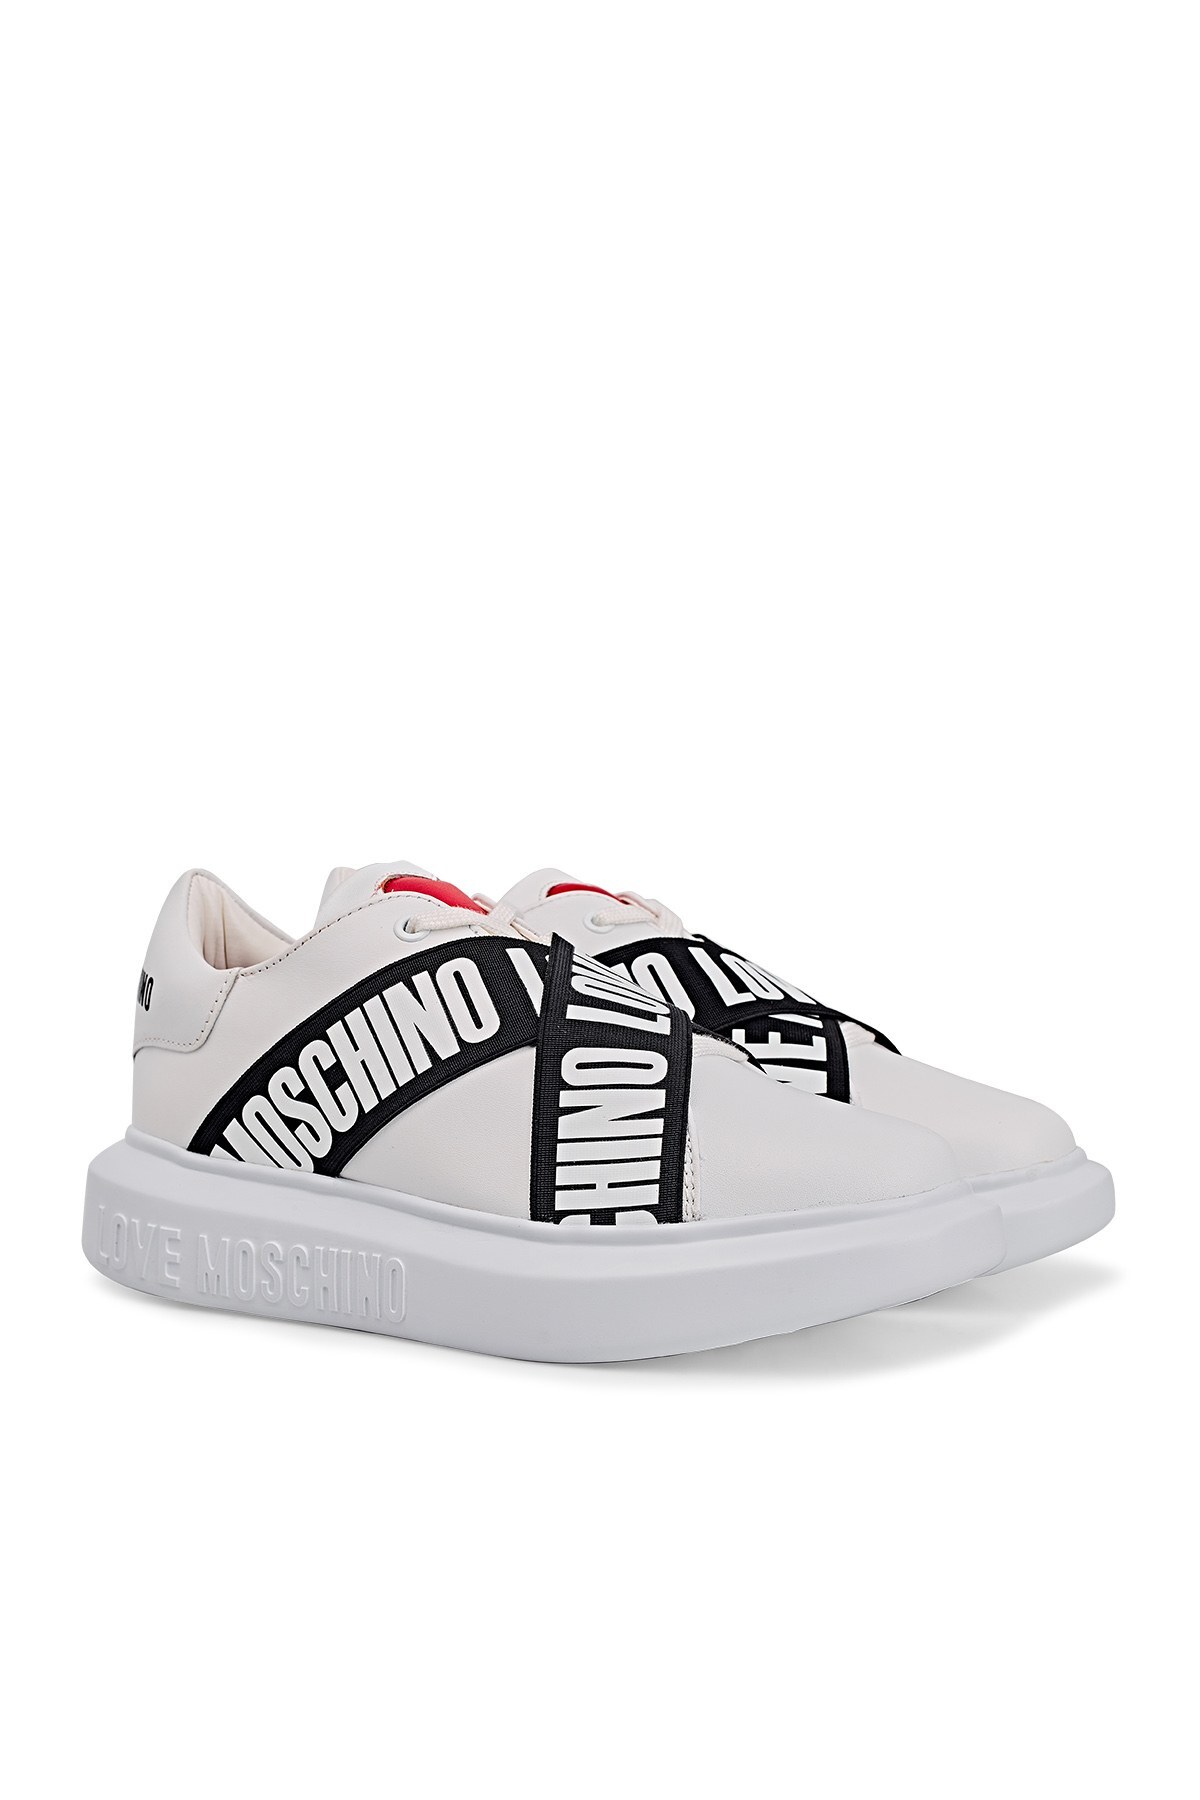 Love Moschino Sneaker Bayan Ayakkabı JA15254G1CIA0100 BEYAZ